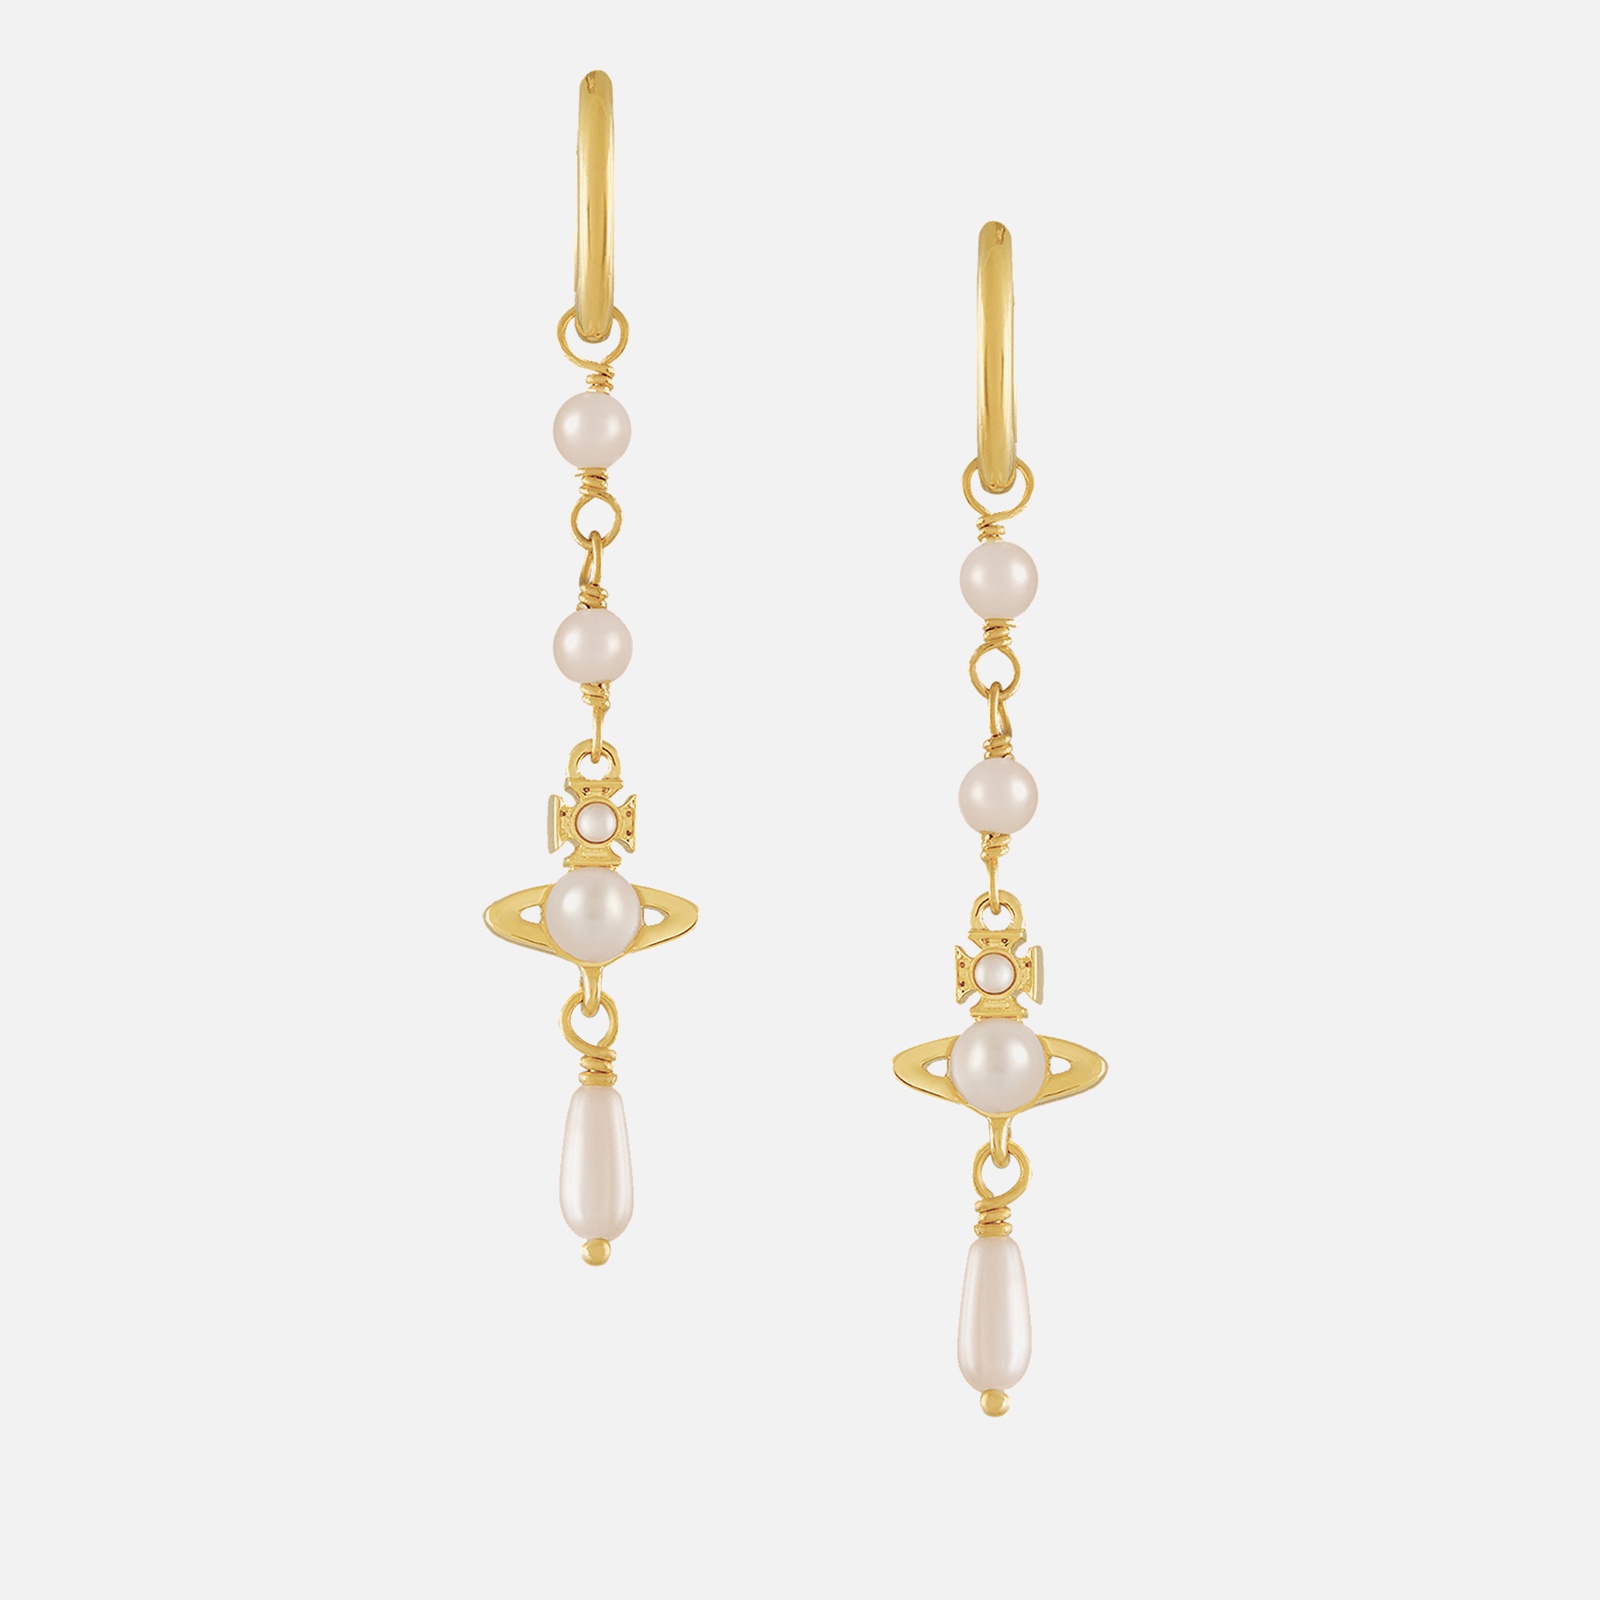 Vivienne Westwood Women's Emiliana Gold Tone Drop Earrings - Gold/Creamrose - 1